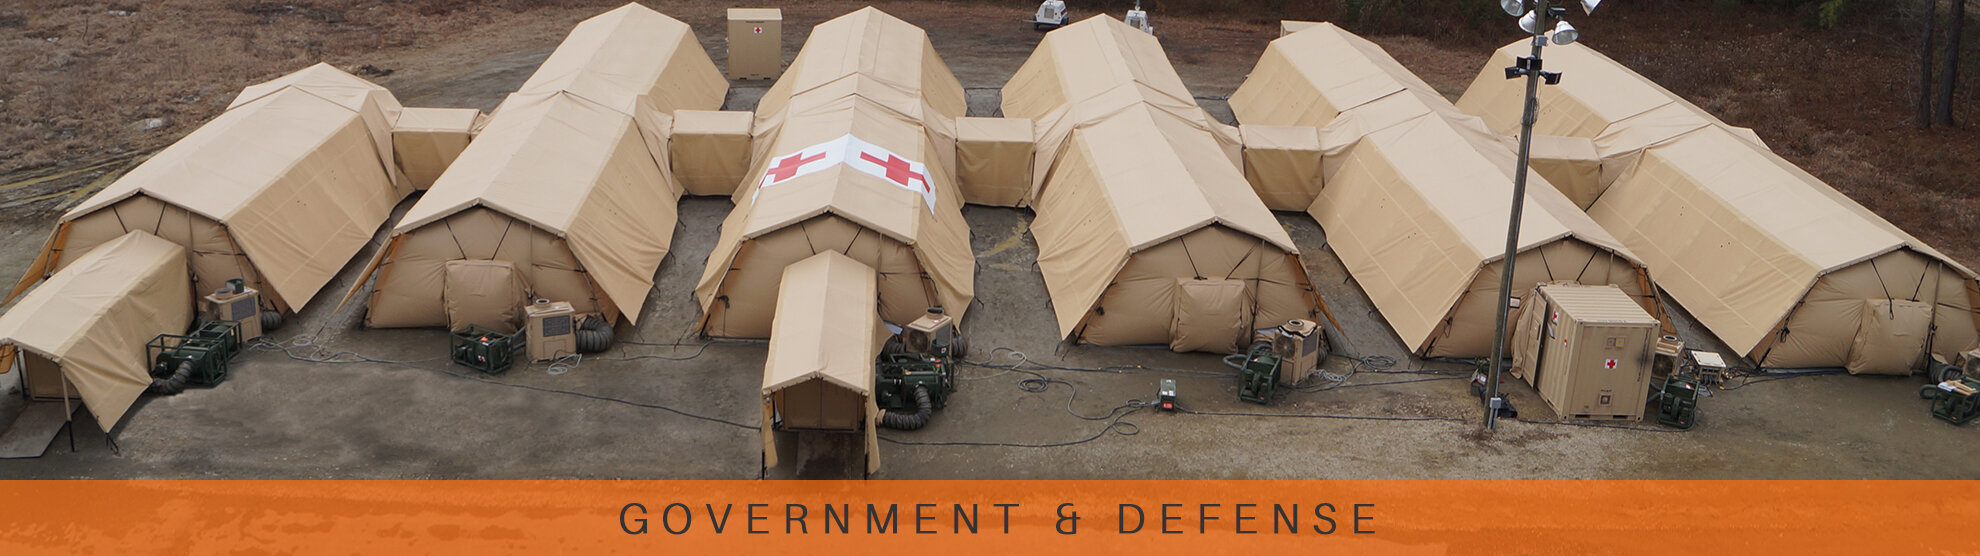 government-defense-slider.jpg